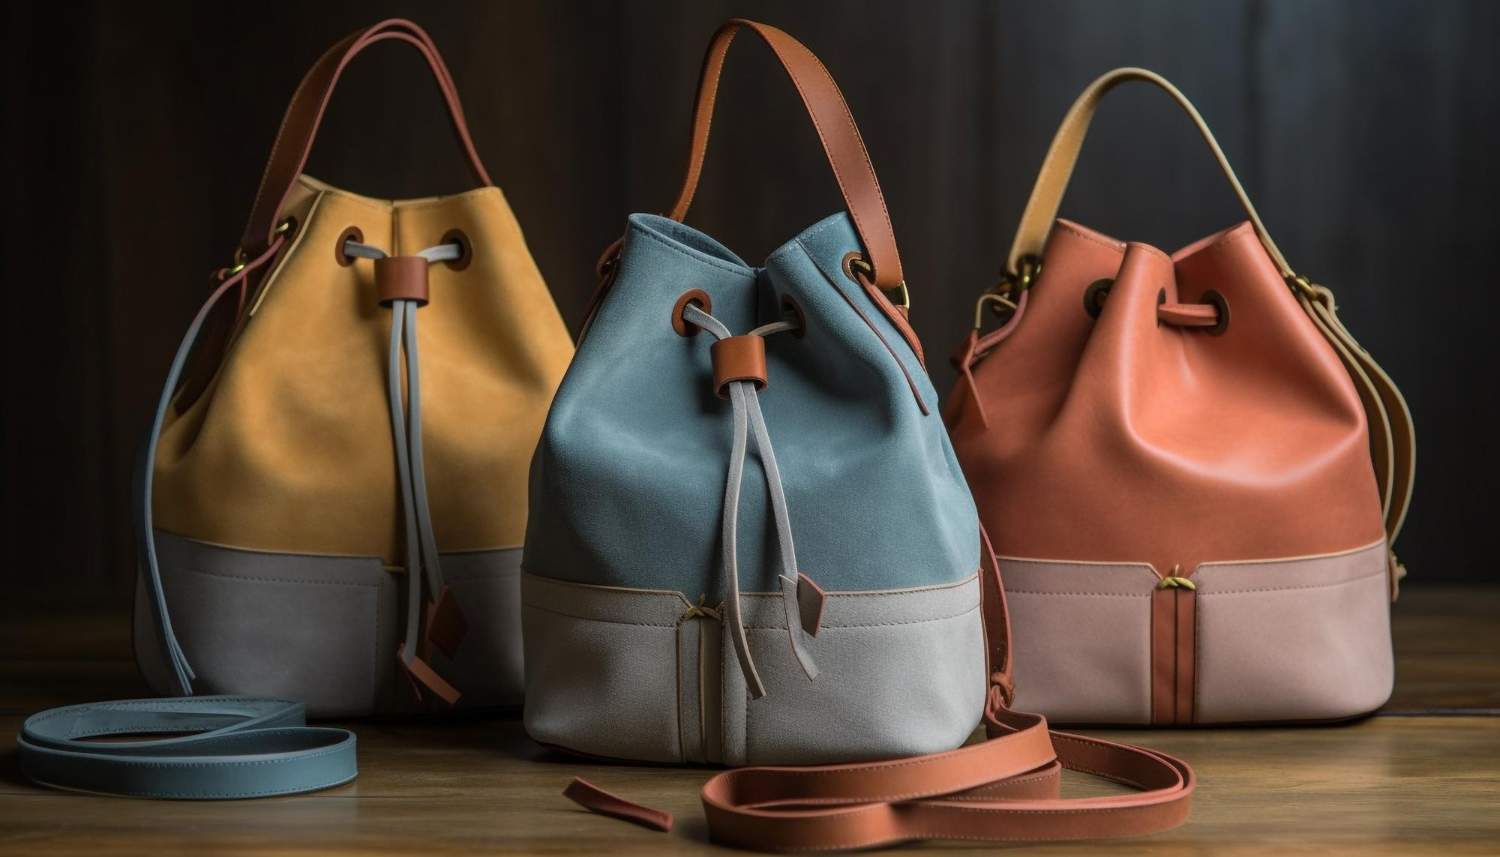 Handbags by ignitesupplychain